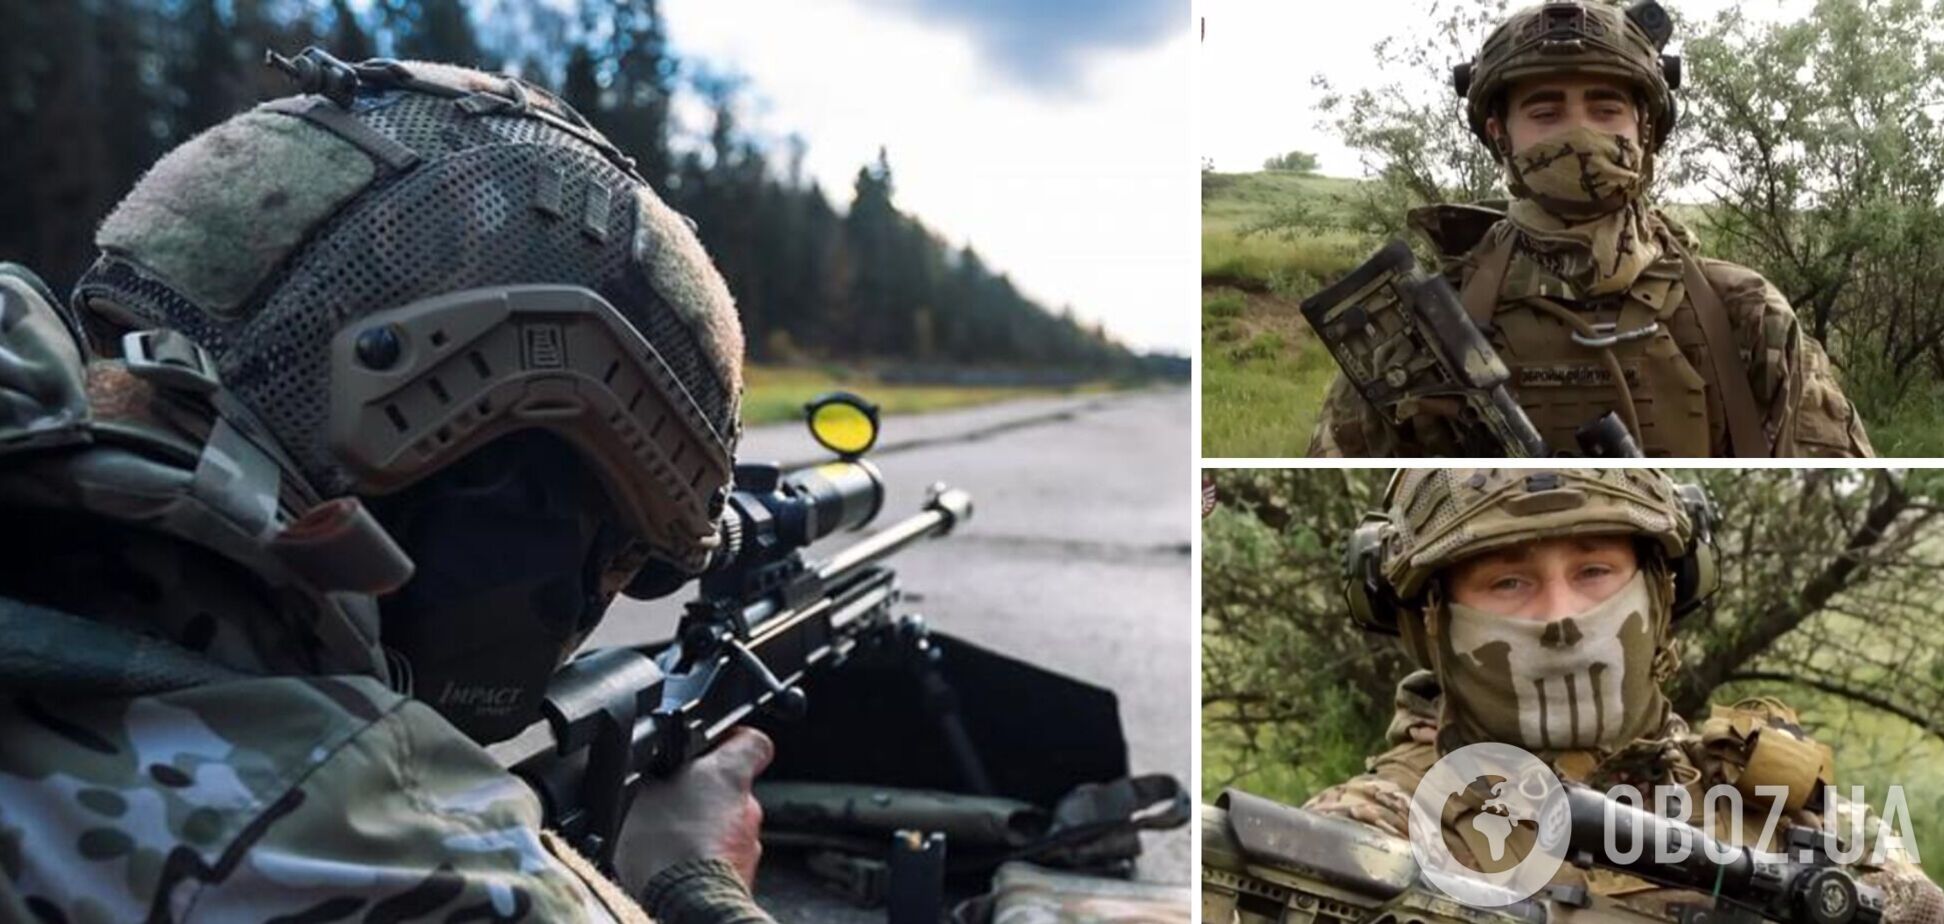 Украинские снайперы наглядно показали, как 'демилитаризуют' врага на фронте. Видео